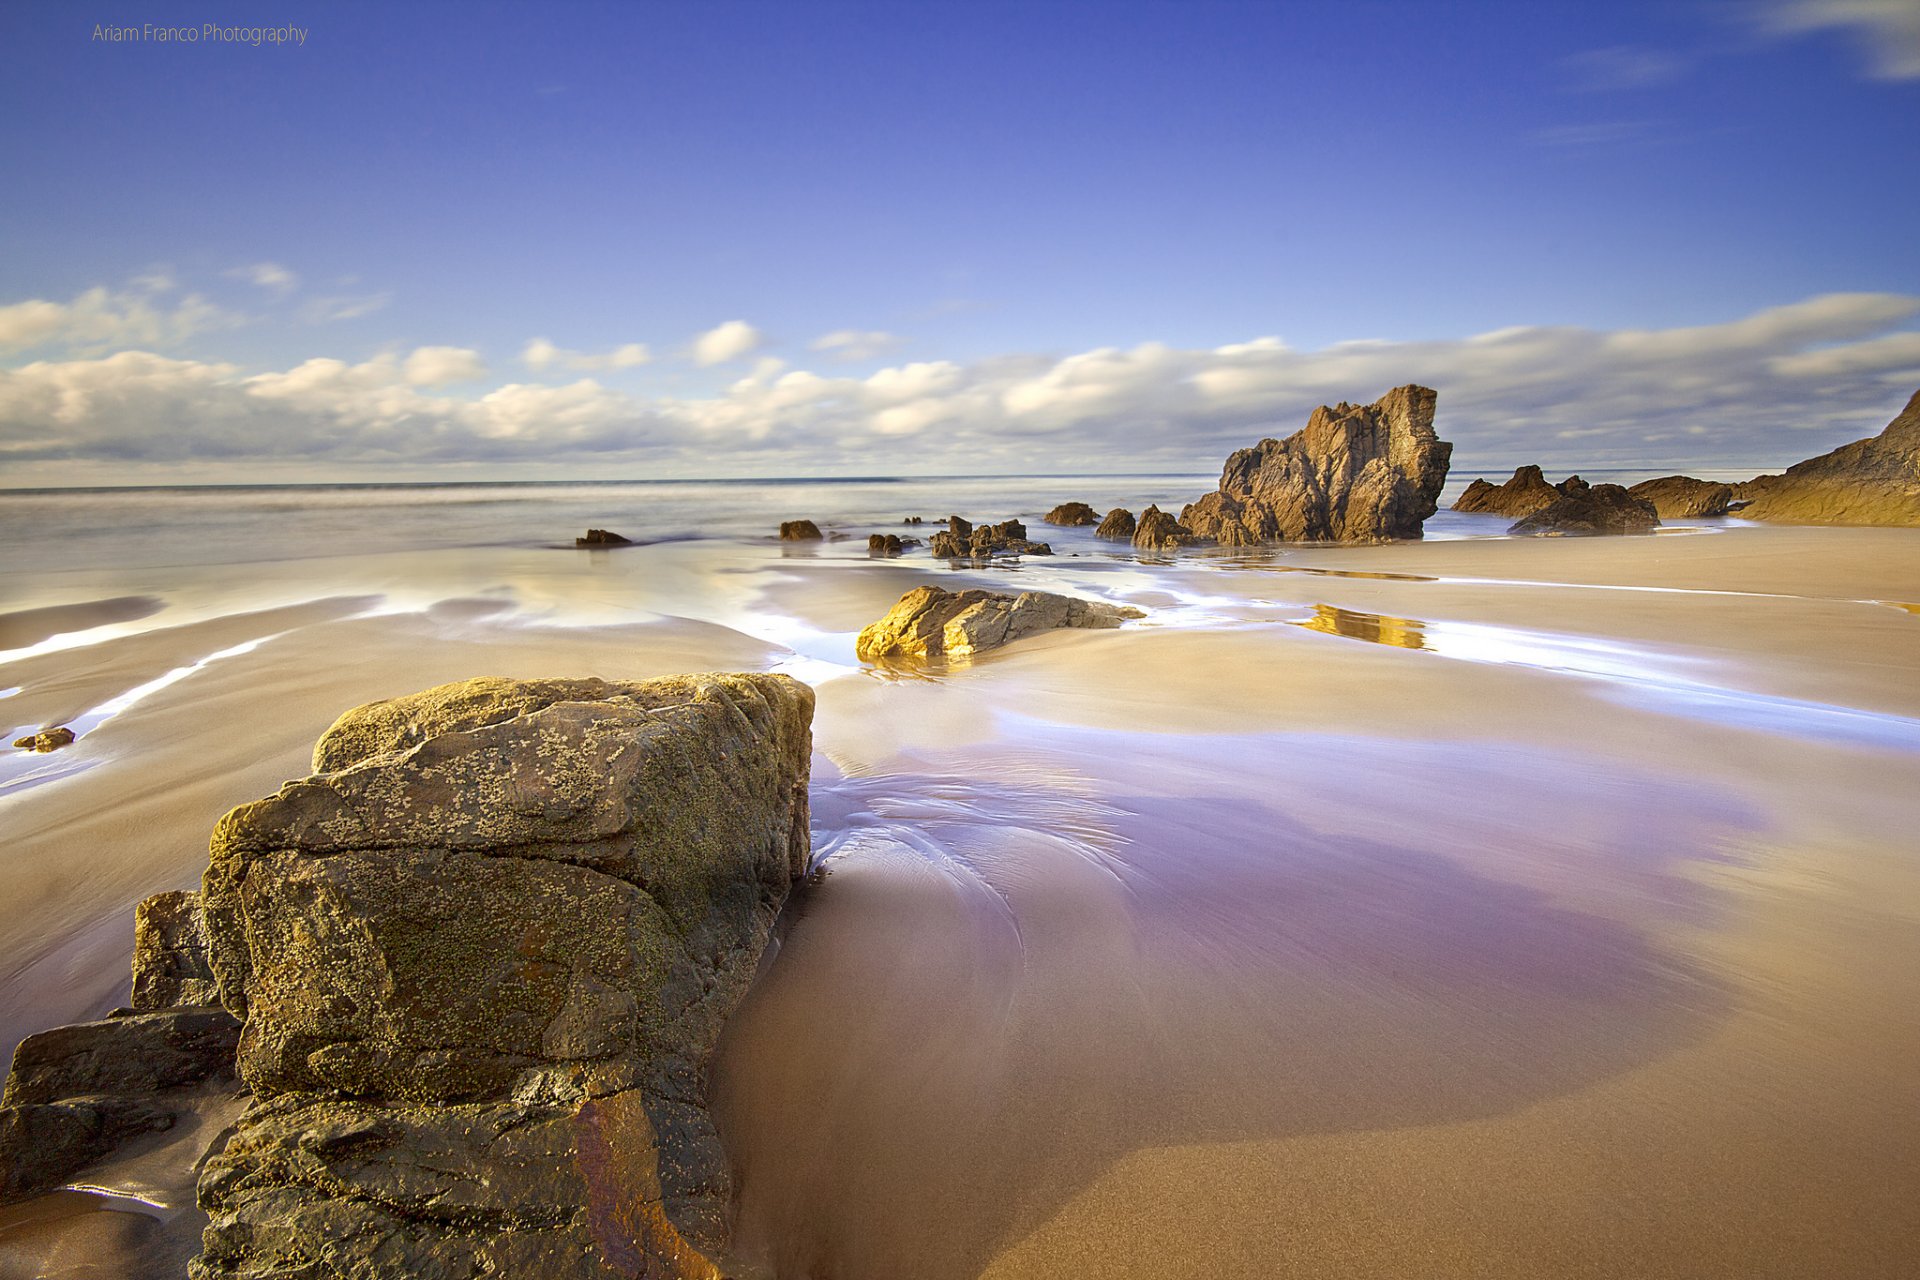 hiszpania asturia plaża piasek morze skały niebo chmury wiosna kwiecień